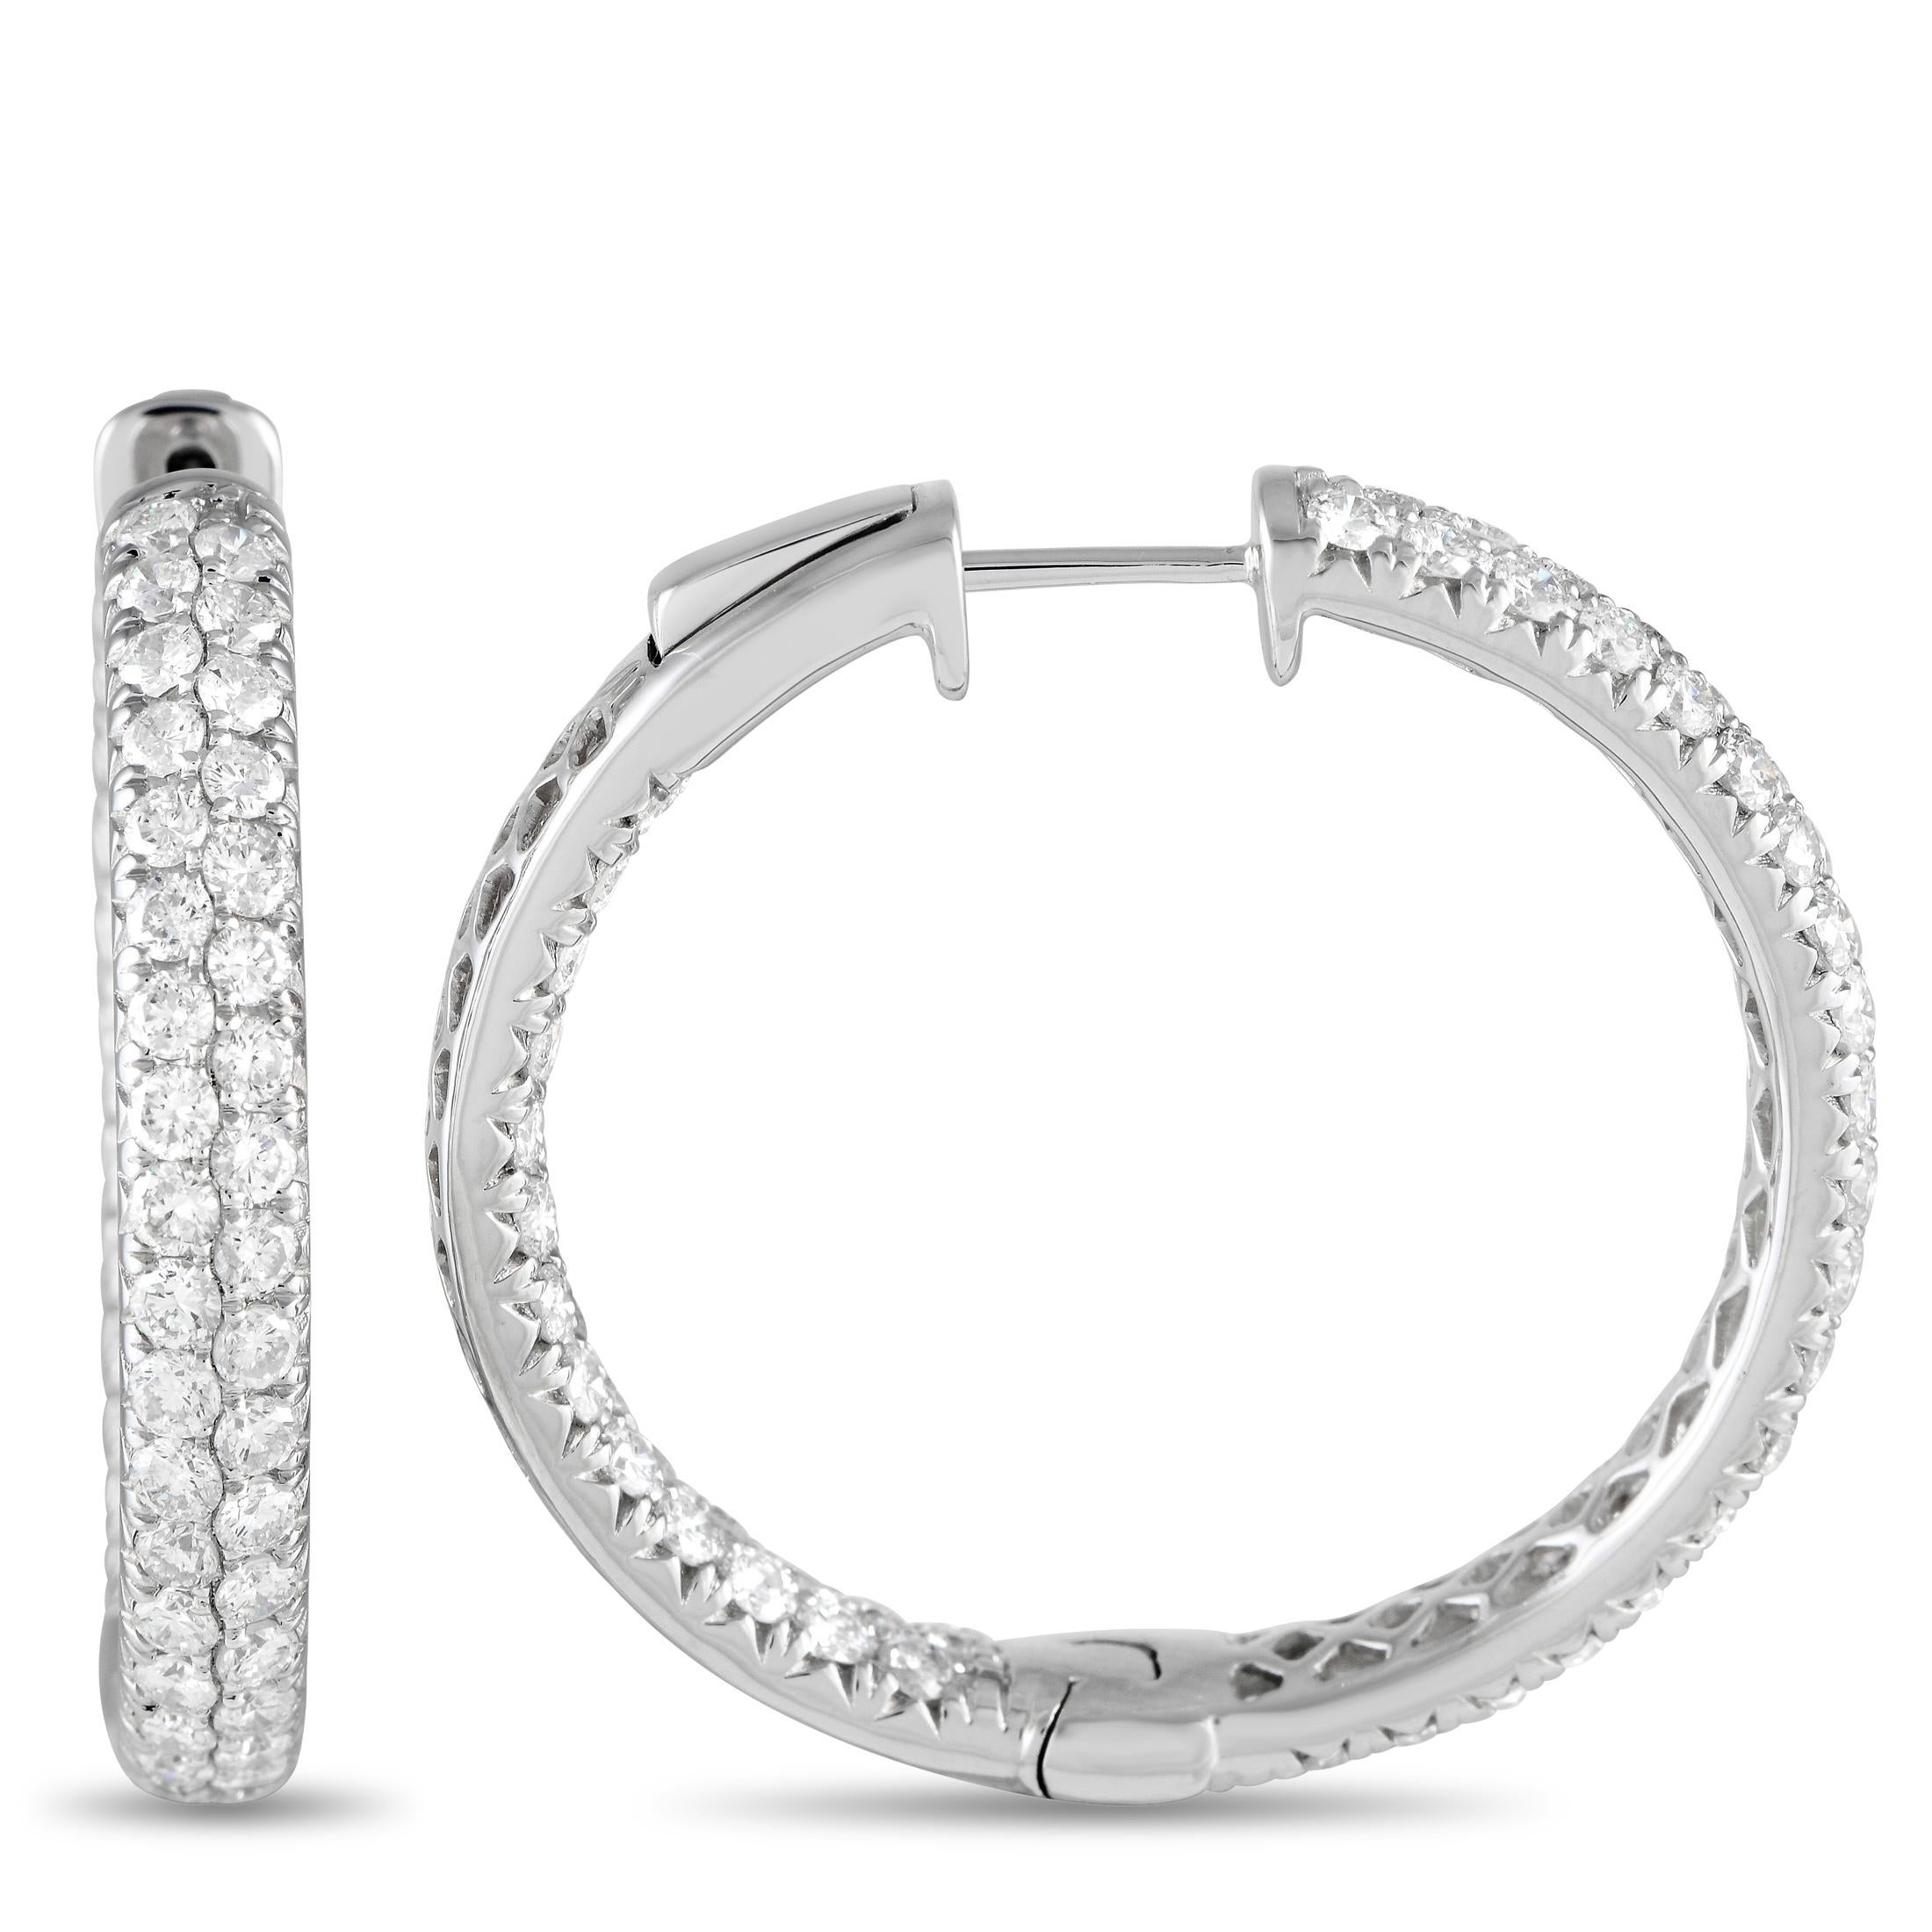 Ces anneaux offrent beaucoup d'éclat et de style. Conçu avec un agencement intérieur-extérieur de diamants, chaque anneau a sa face extérieure et son dos intérieur orienté vers l'avant garnis de deux rangées de diamants. Ces anneaux en diamant ne